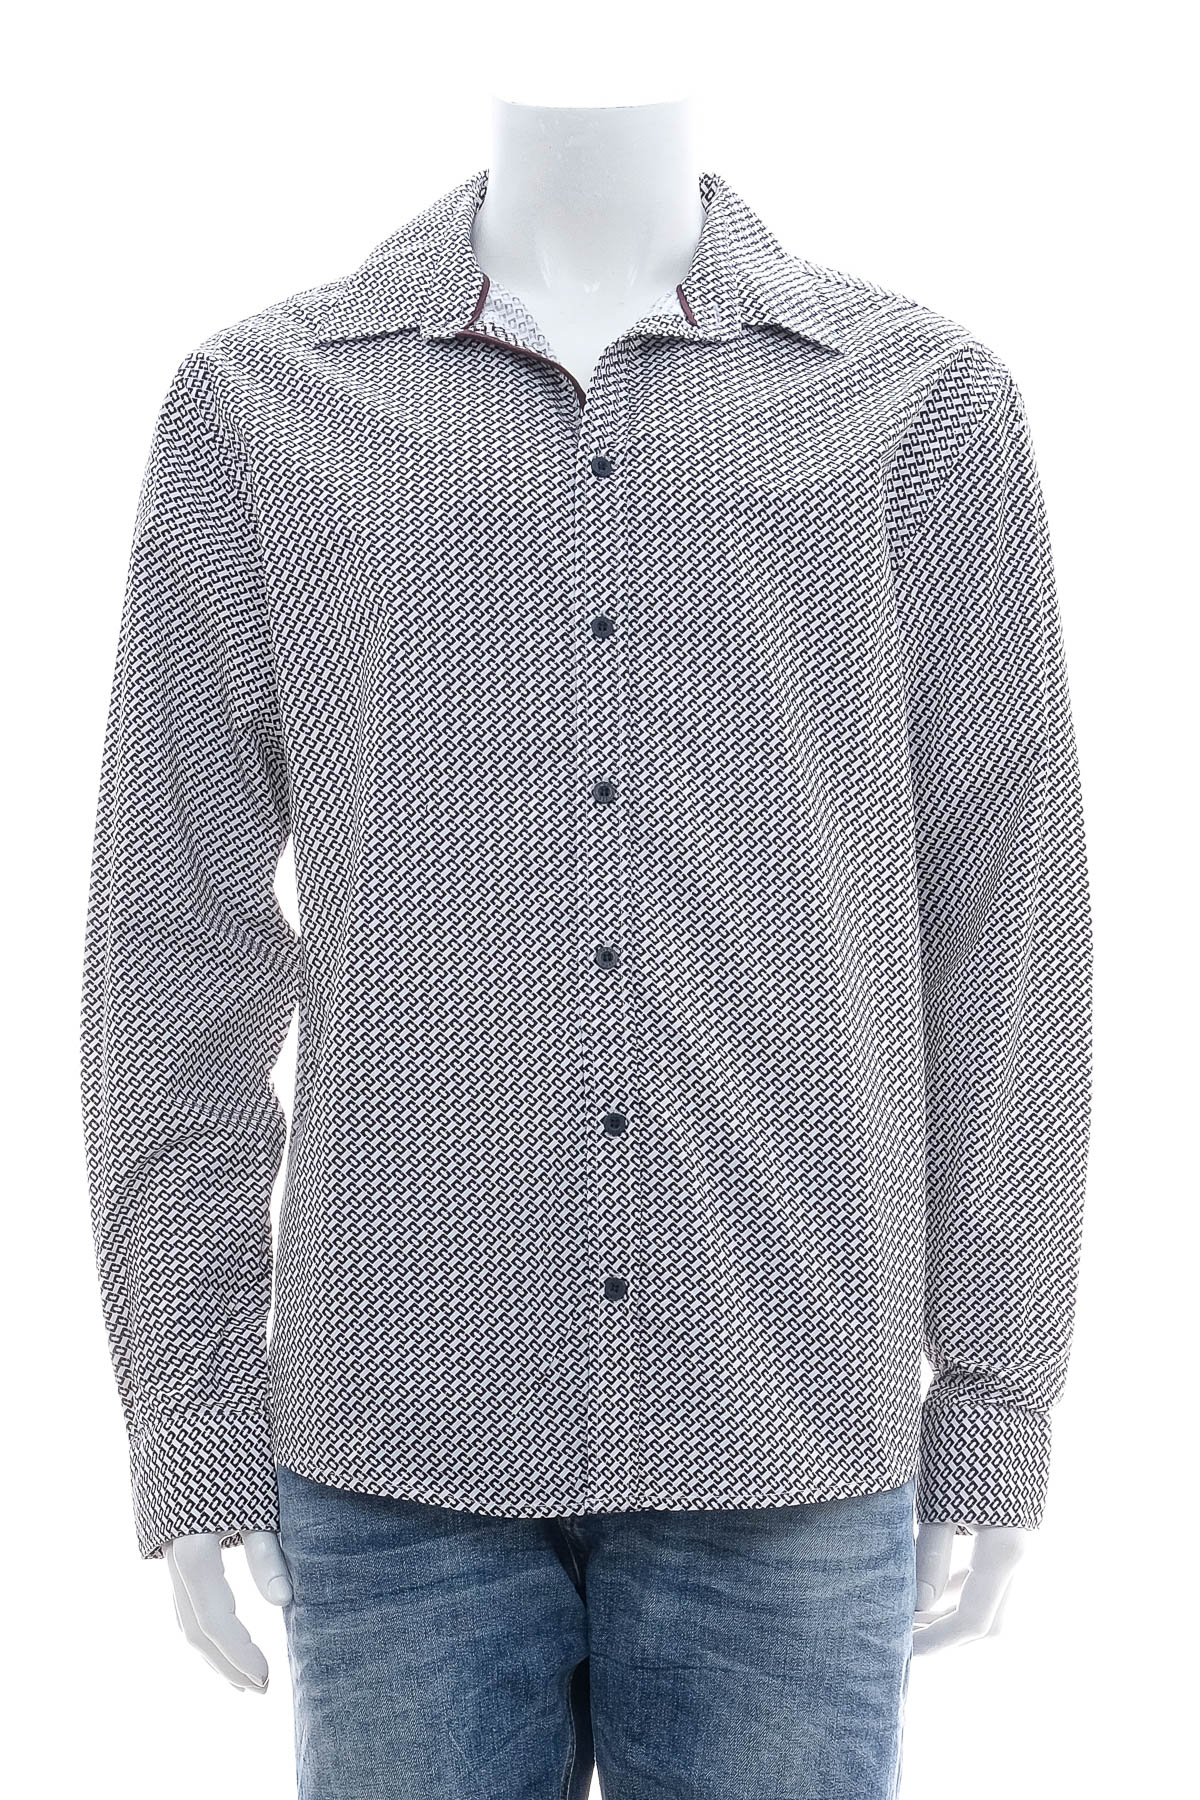 Ανδρικό πουκάμισο - IVEO by jbc - 0